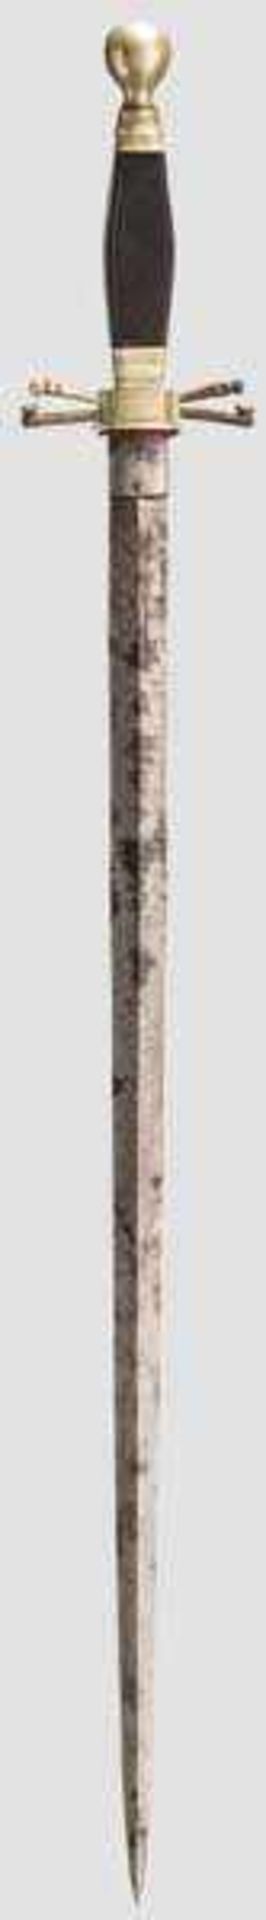 Freimauerer-Dolch, 19. Jhdt. Ungewöhnlich lange, beidseitig gegratete und ornamental geätzte - Bild 2 aus 2